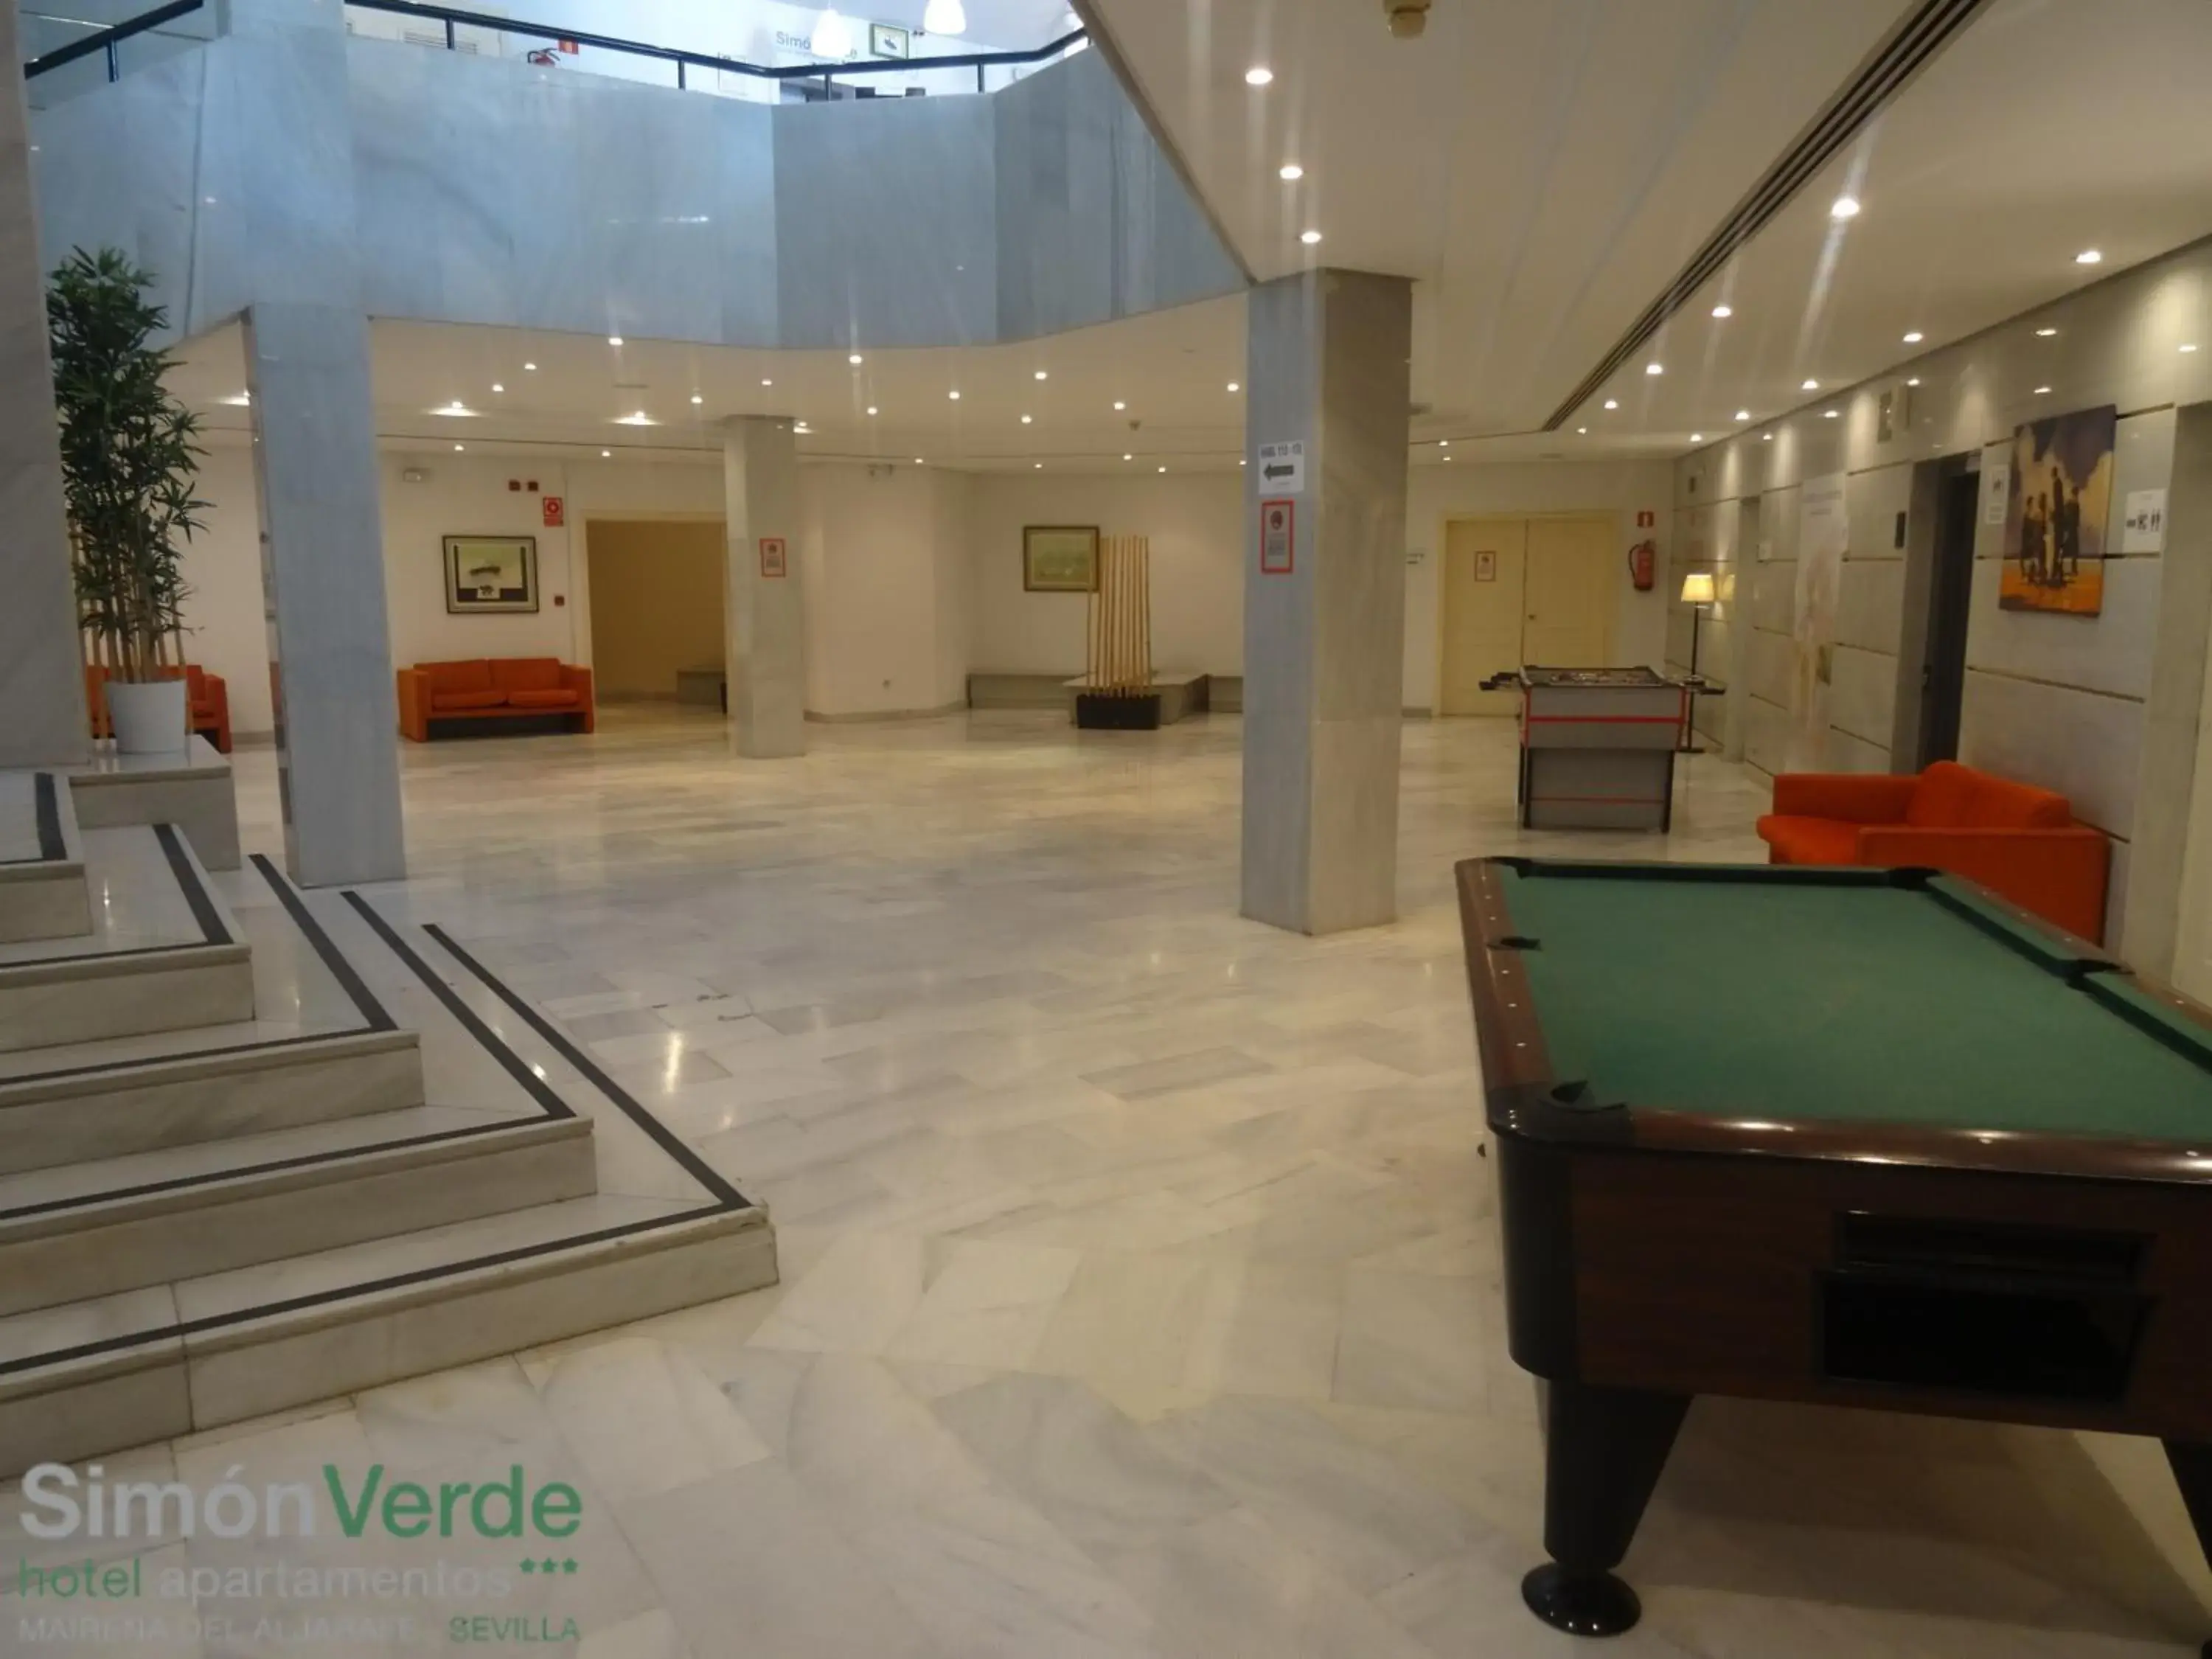 Area and facilities, Billiards in Hospedium Hotel Apartamentos Simón Verde